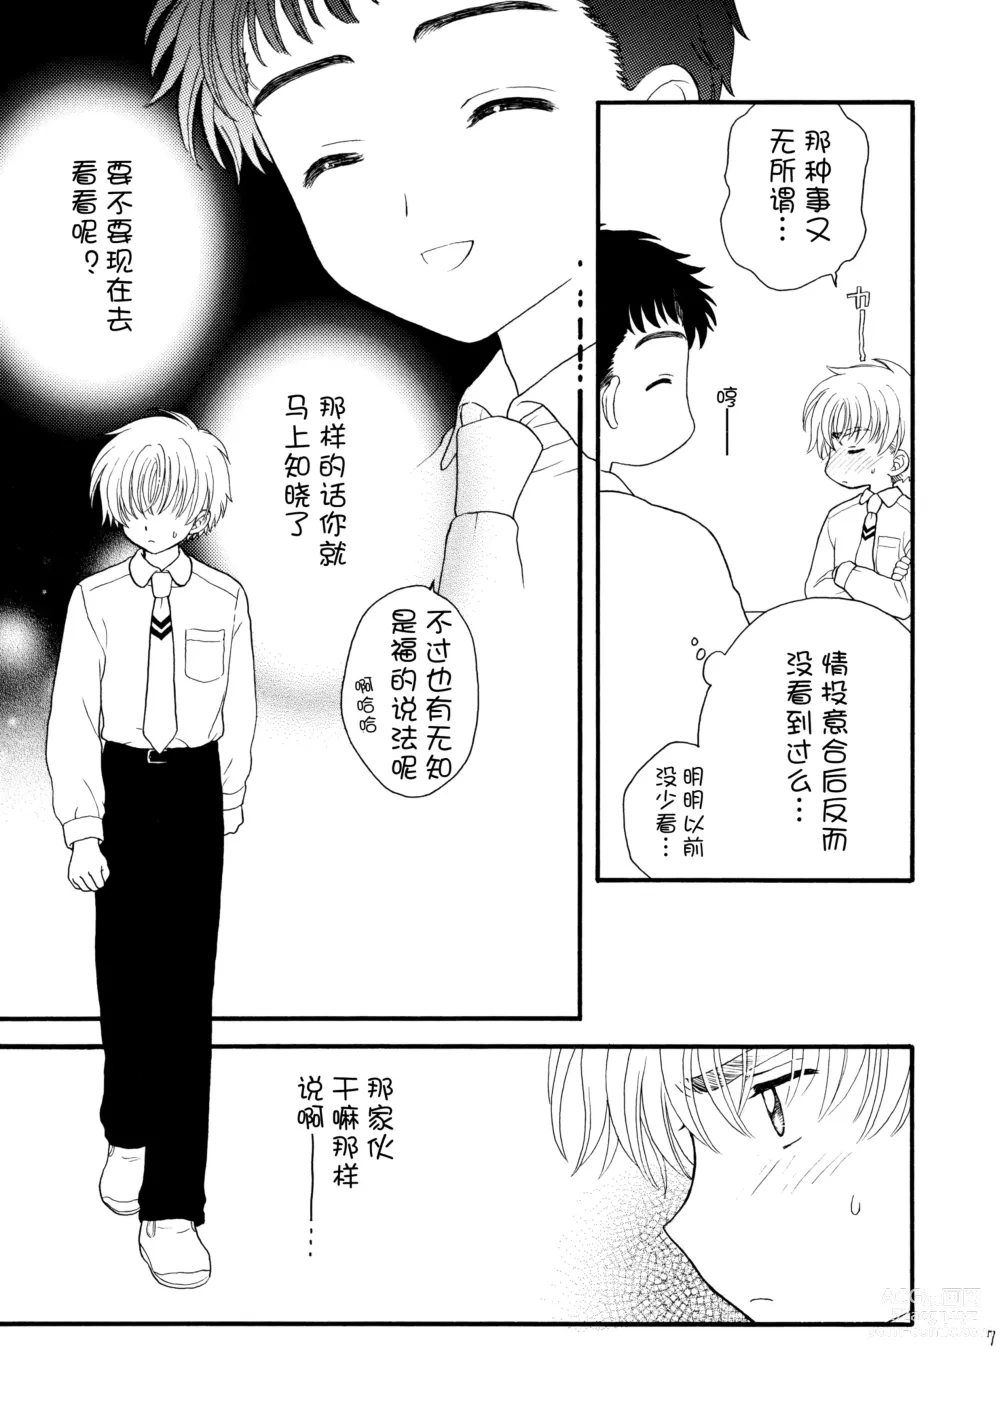 Page 7 of doujinshi Hitorijime